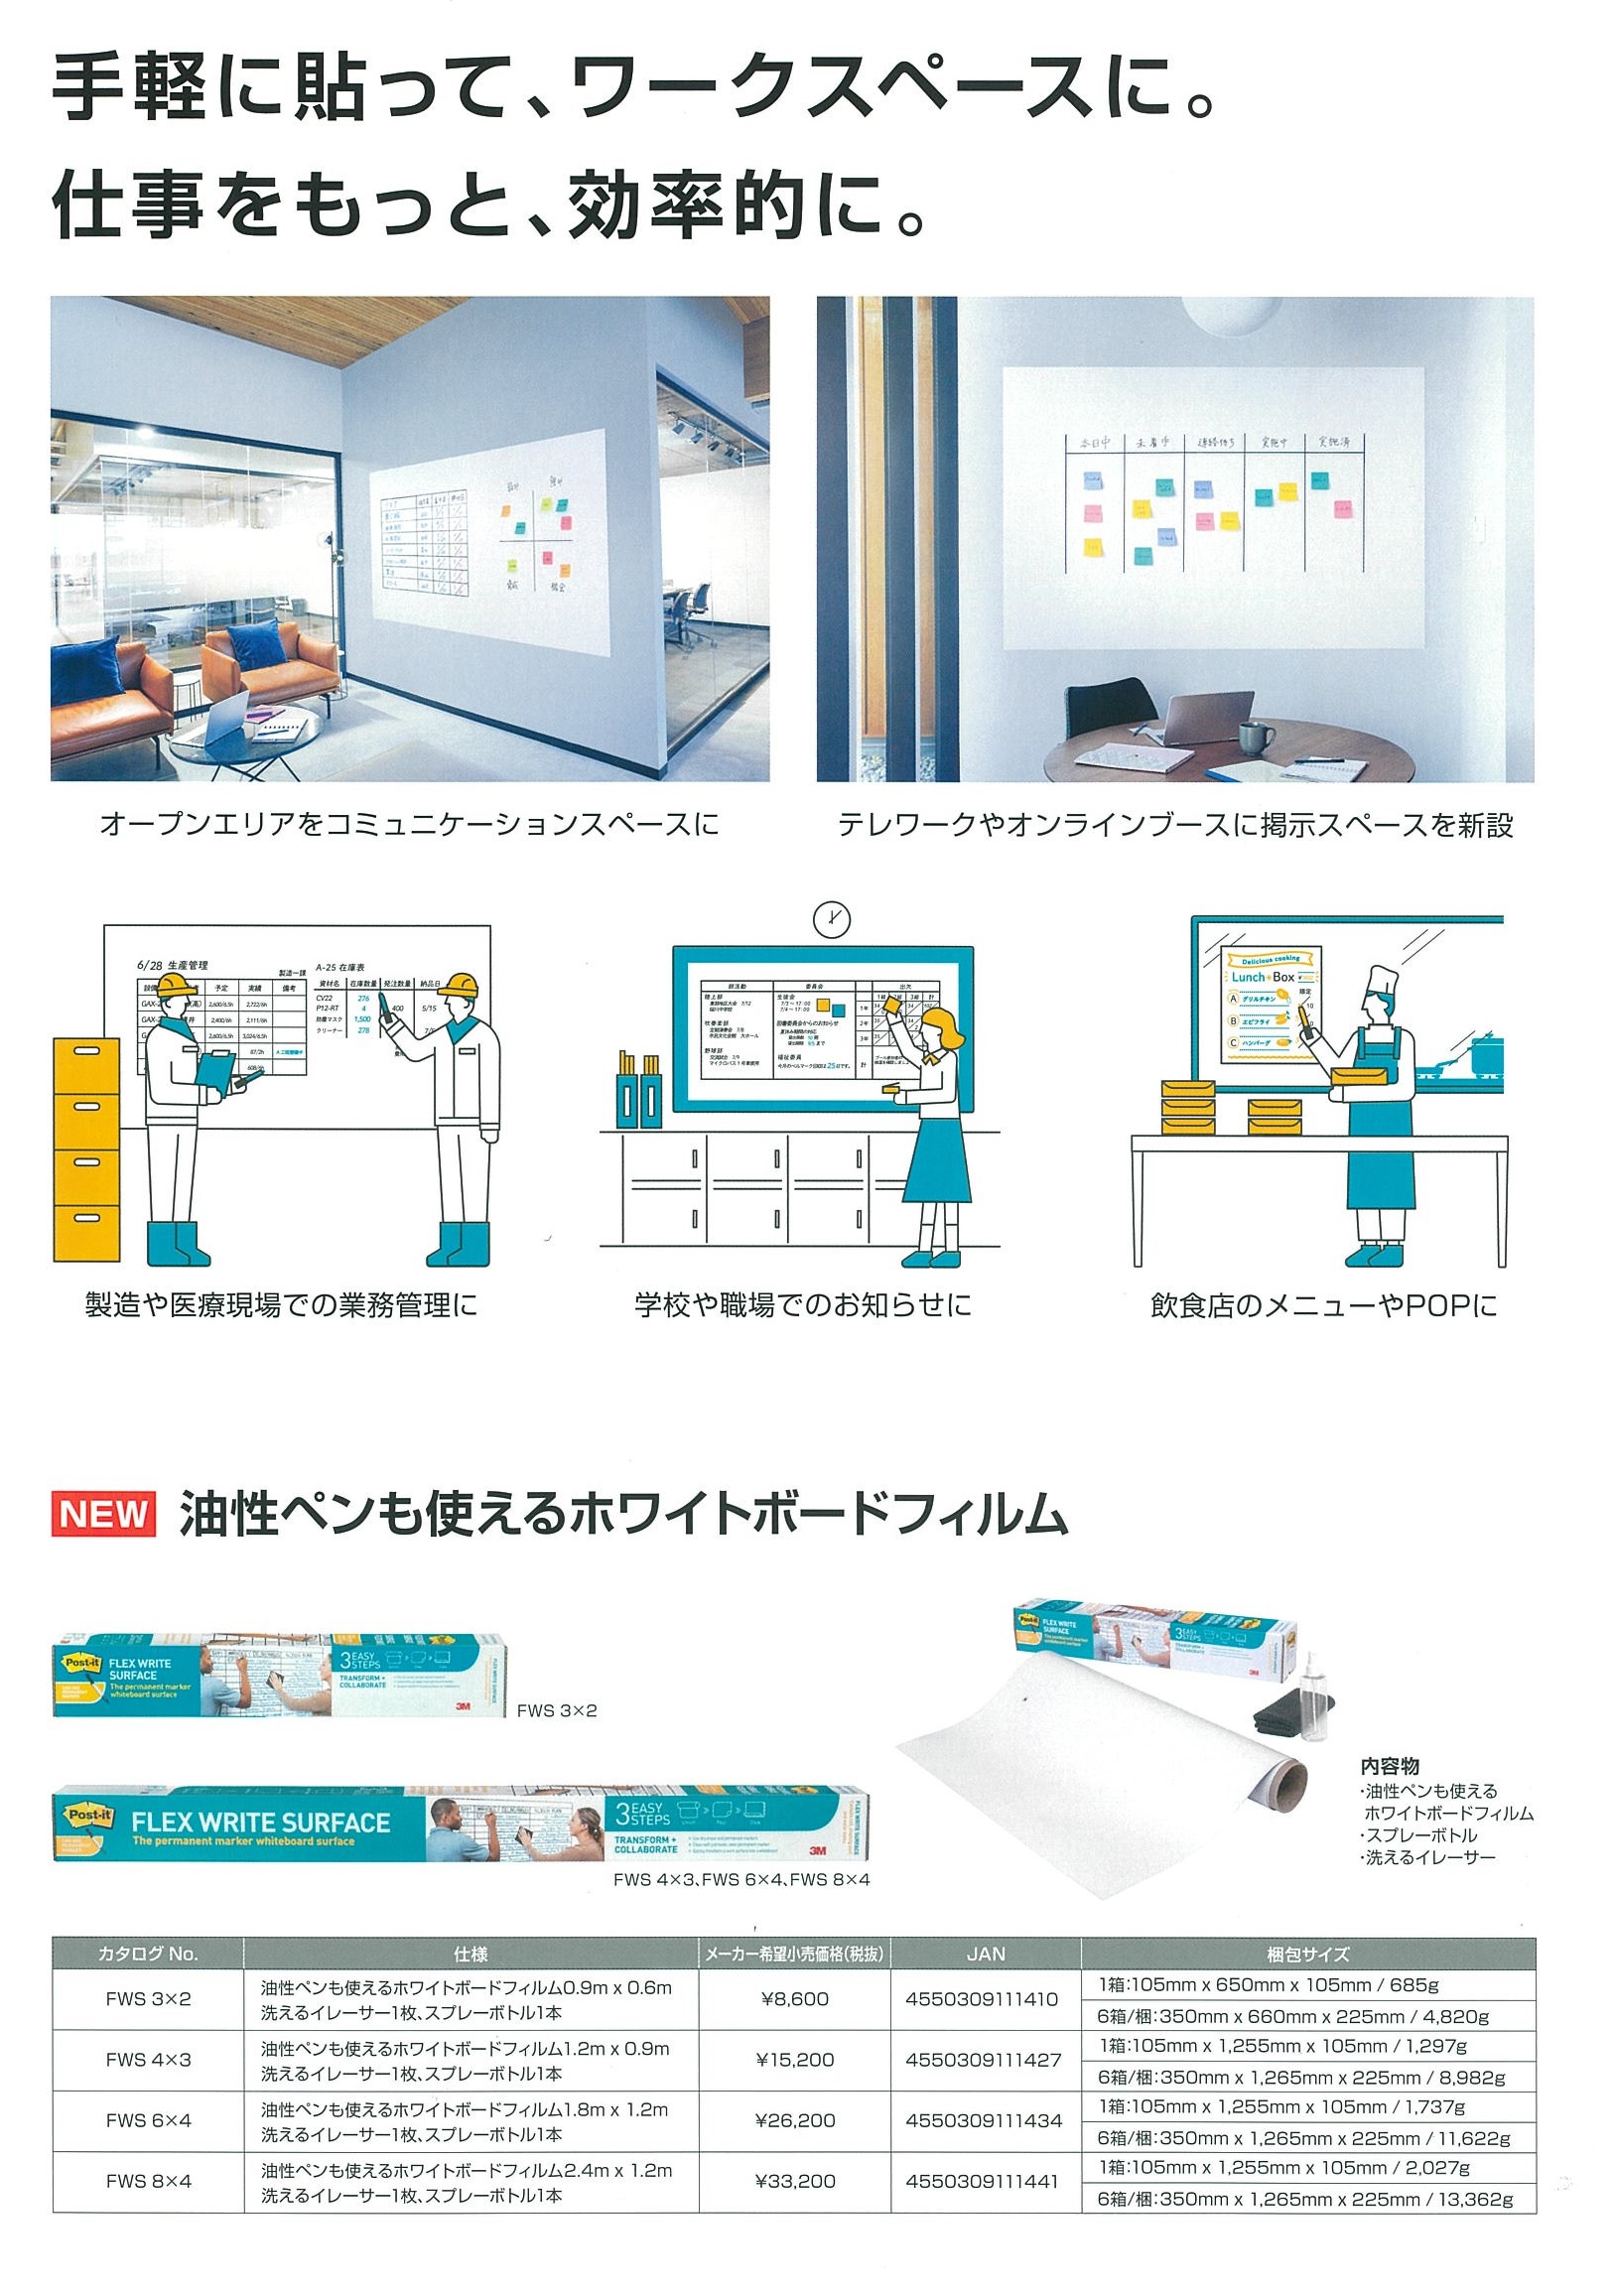 新作アイテム毎日更新 油性ペンも使えるホワイトボードフィルム 1.8m × 1.2mFWS 6X4 tadaomi.sakura.ne.jp